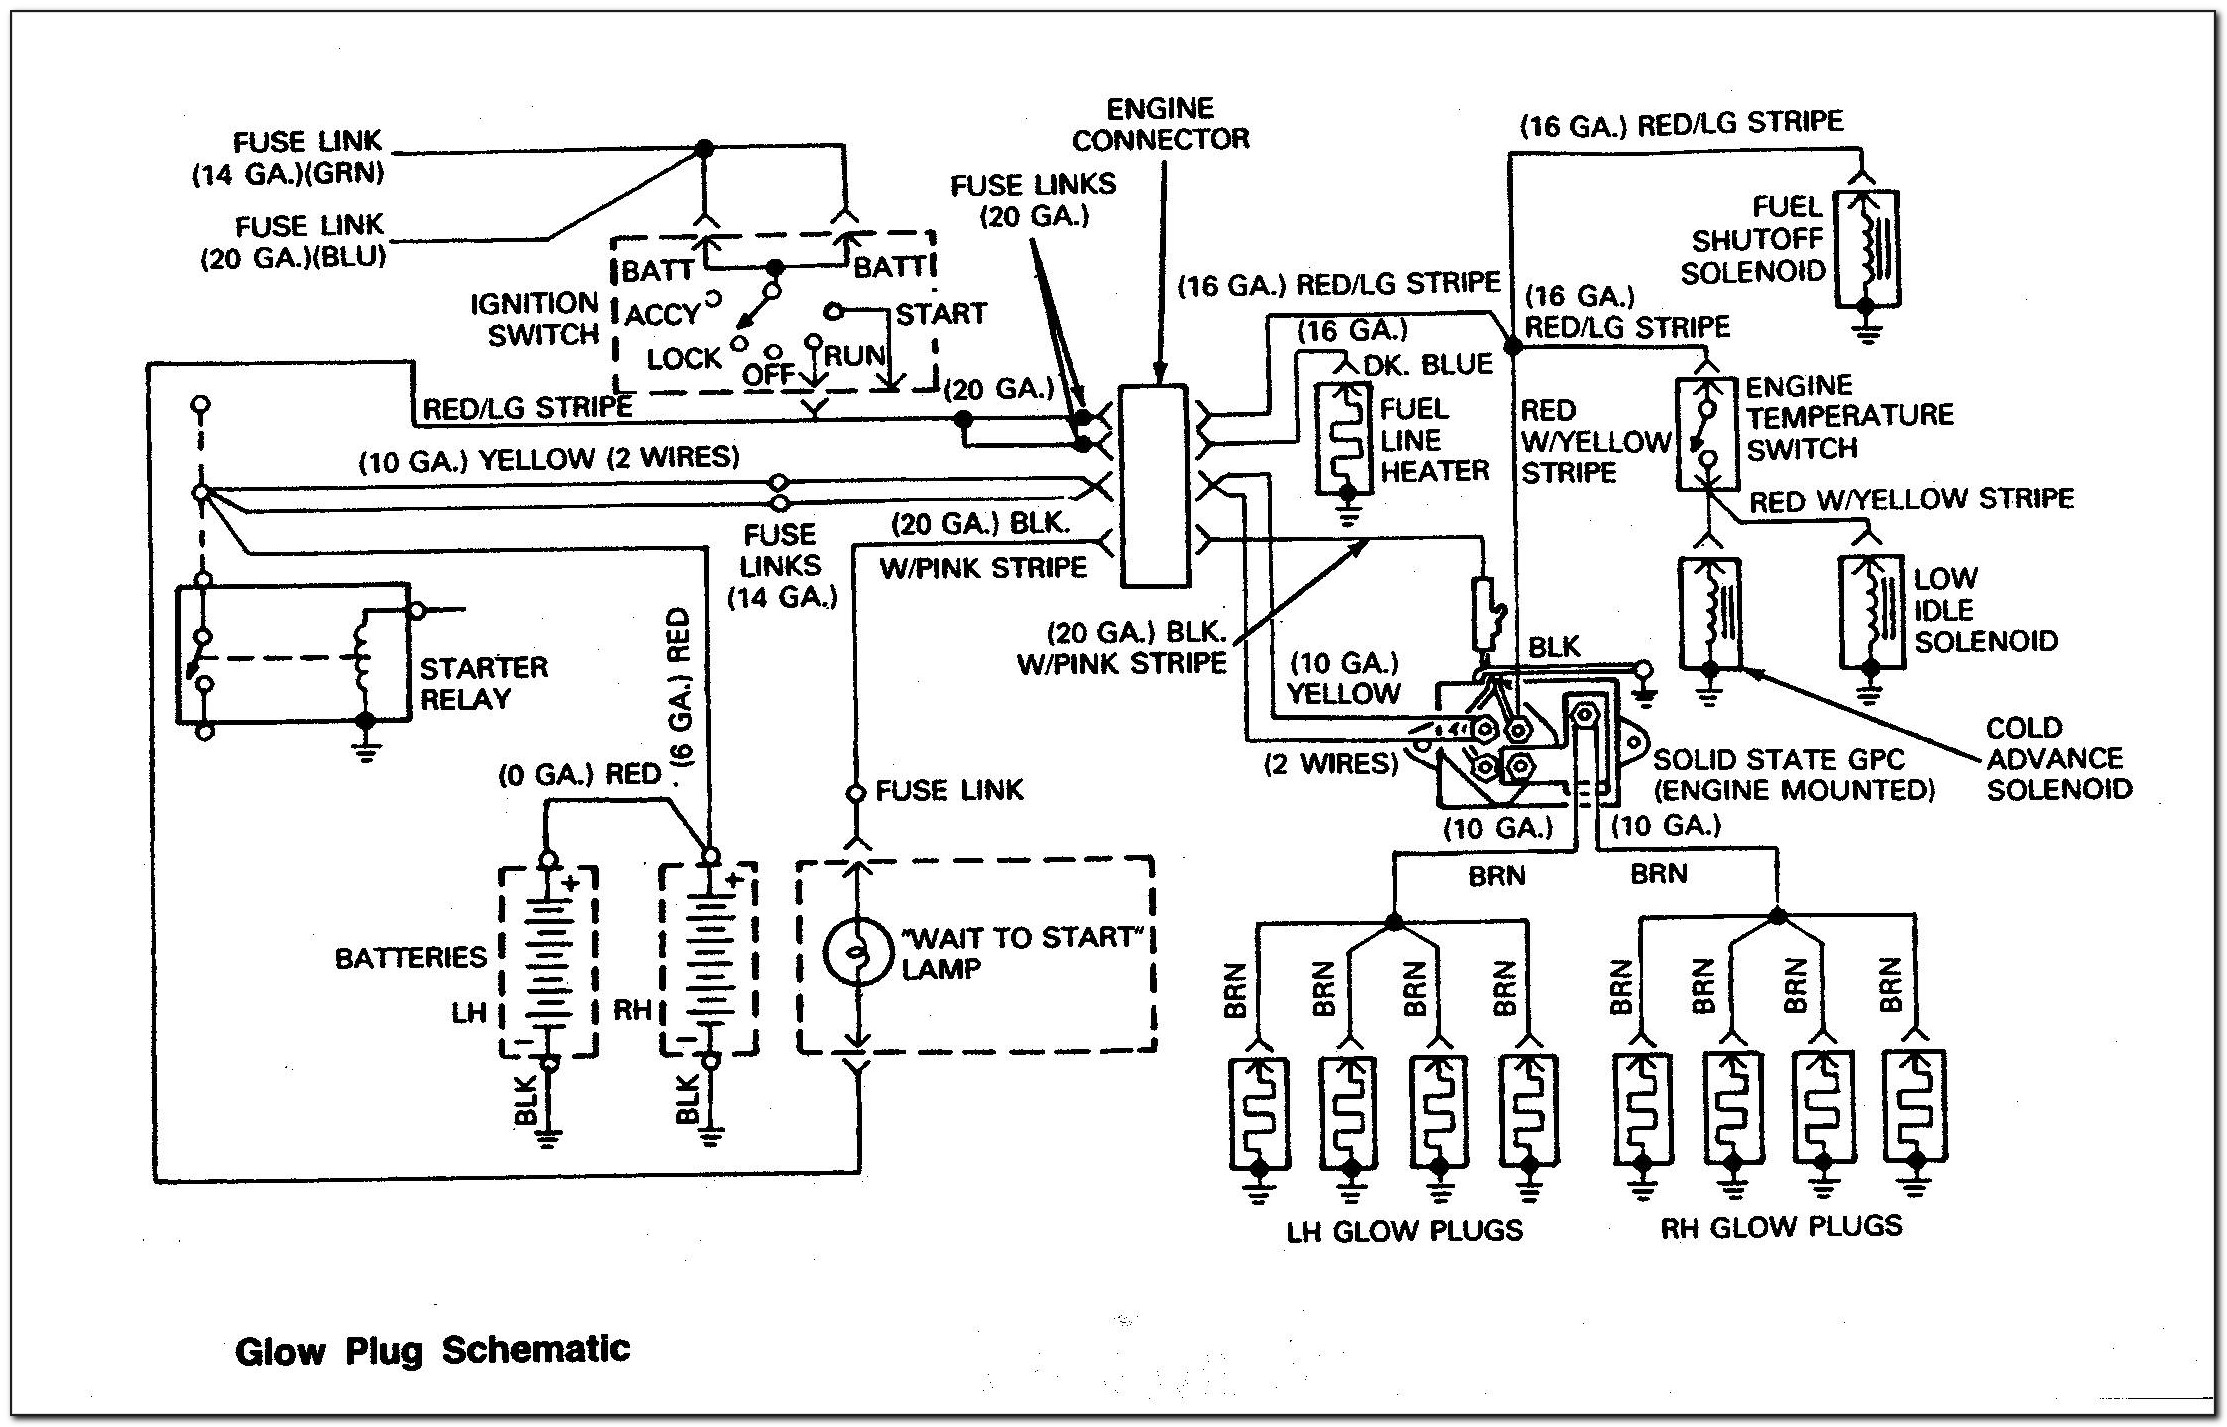 1997 7.3 Powerstroke Glow Plug Wiring Diagram